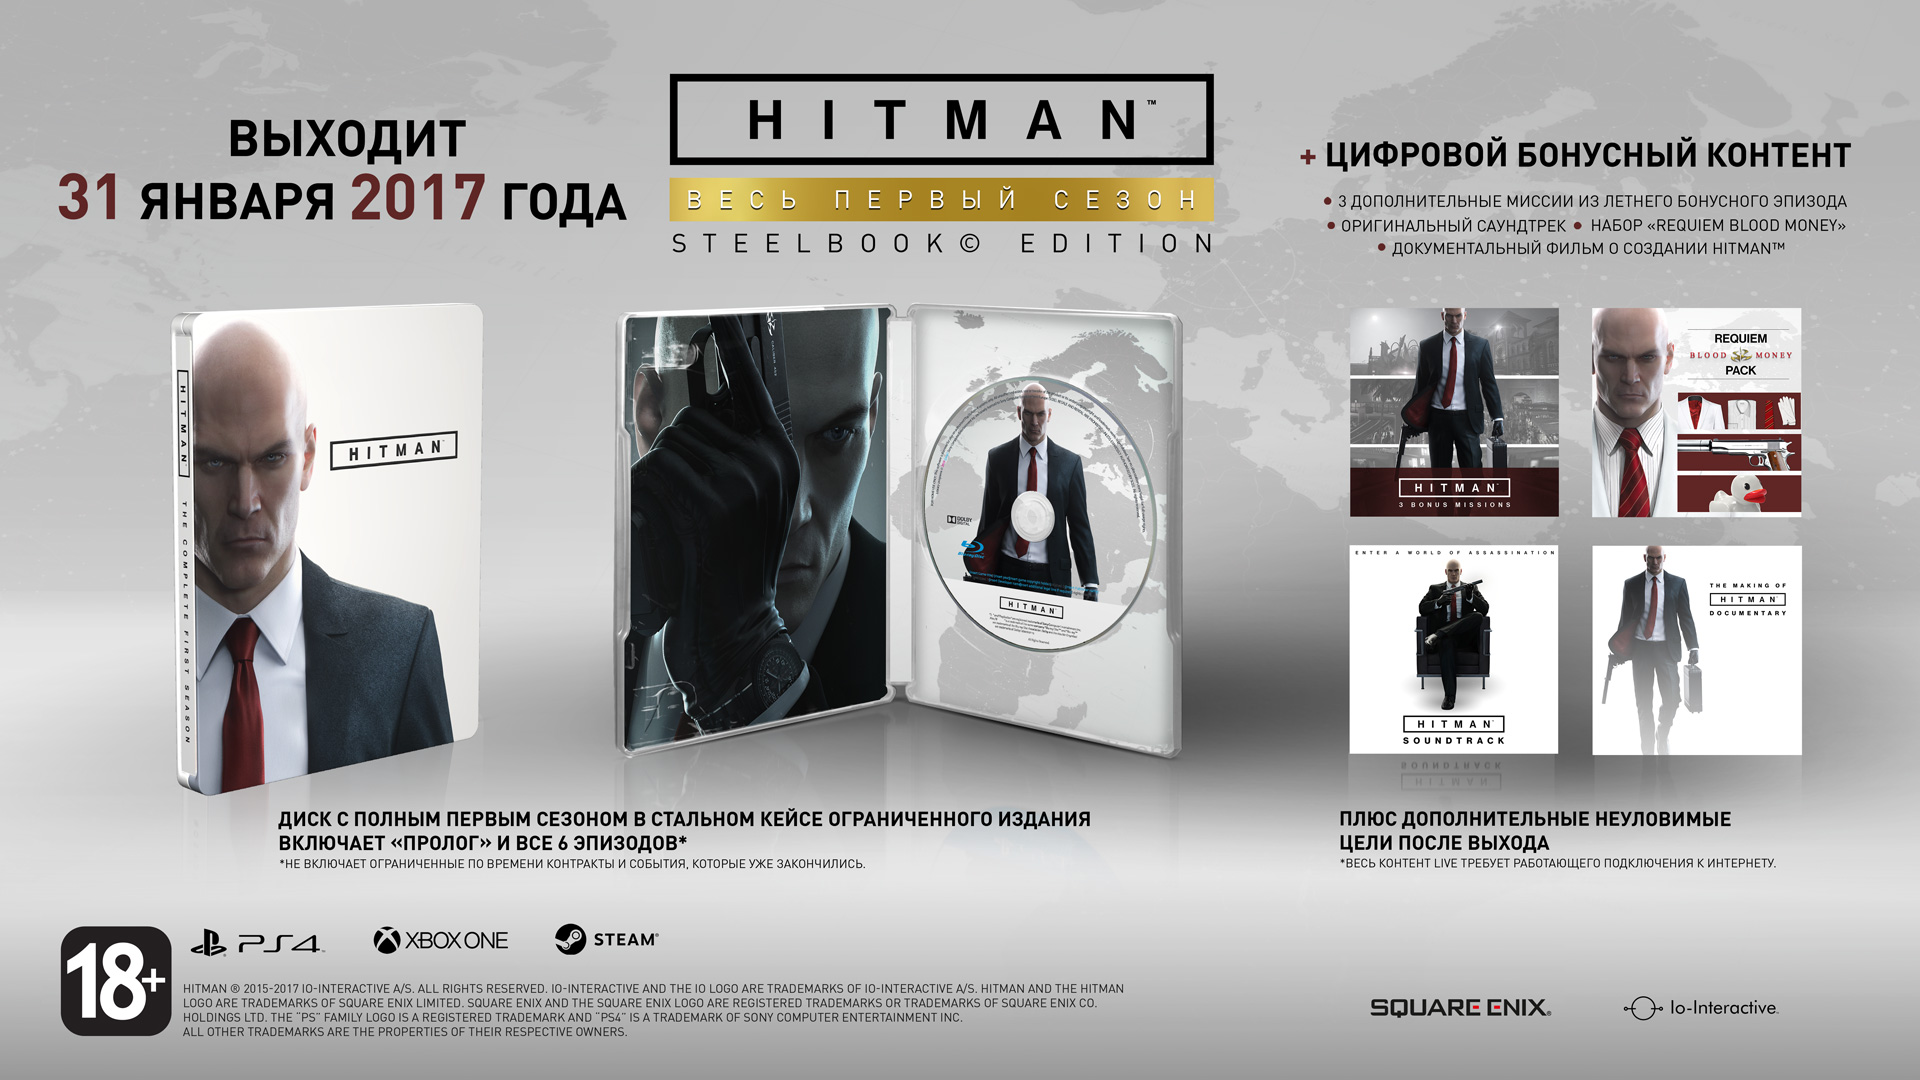 Дисковое издание Hitman появится в России 31 января 2017 года